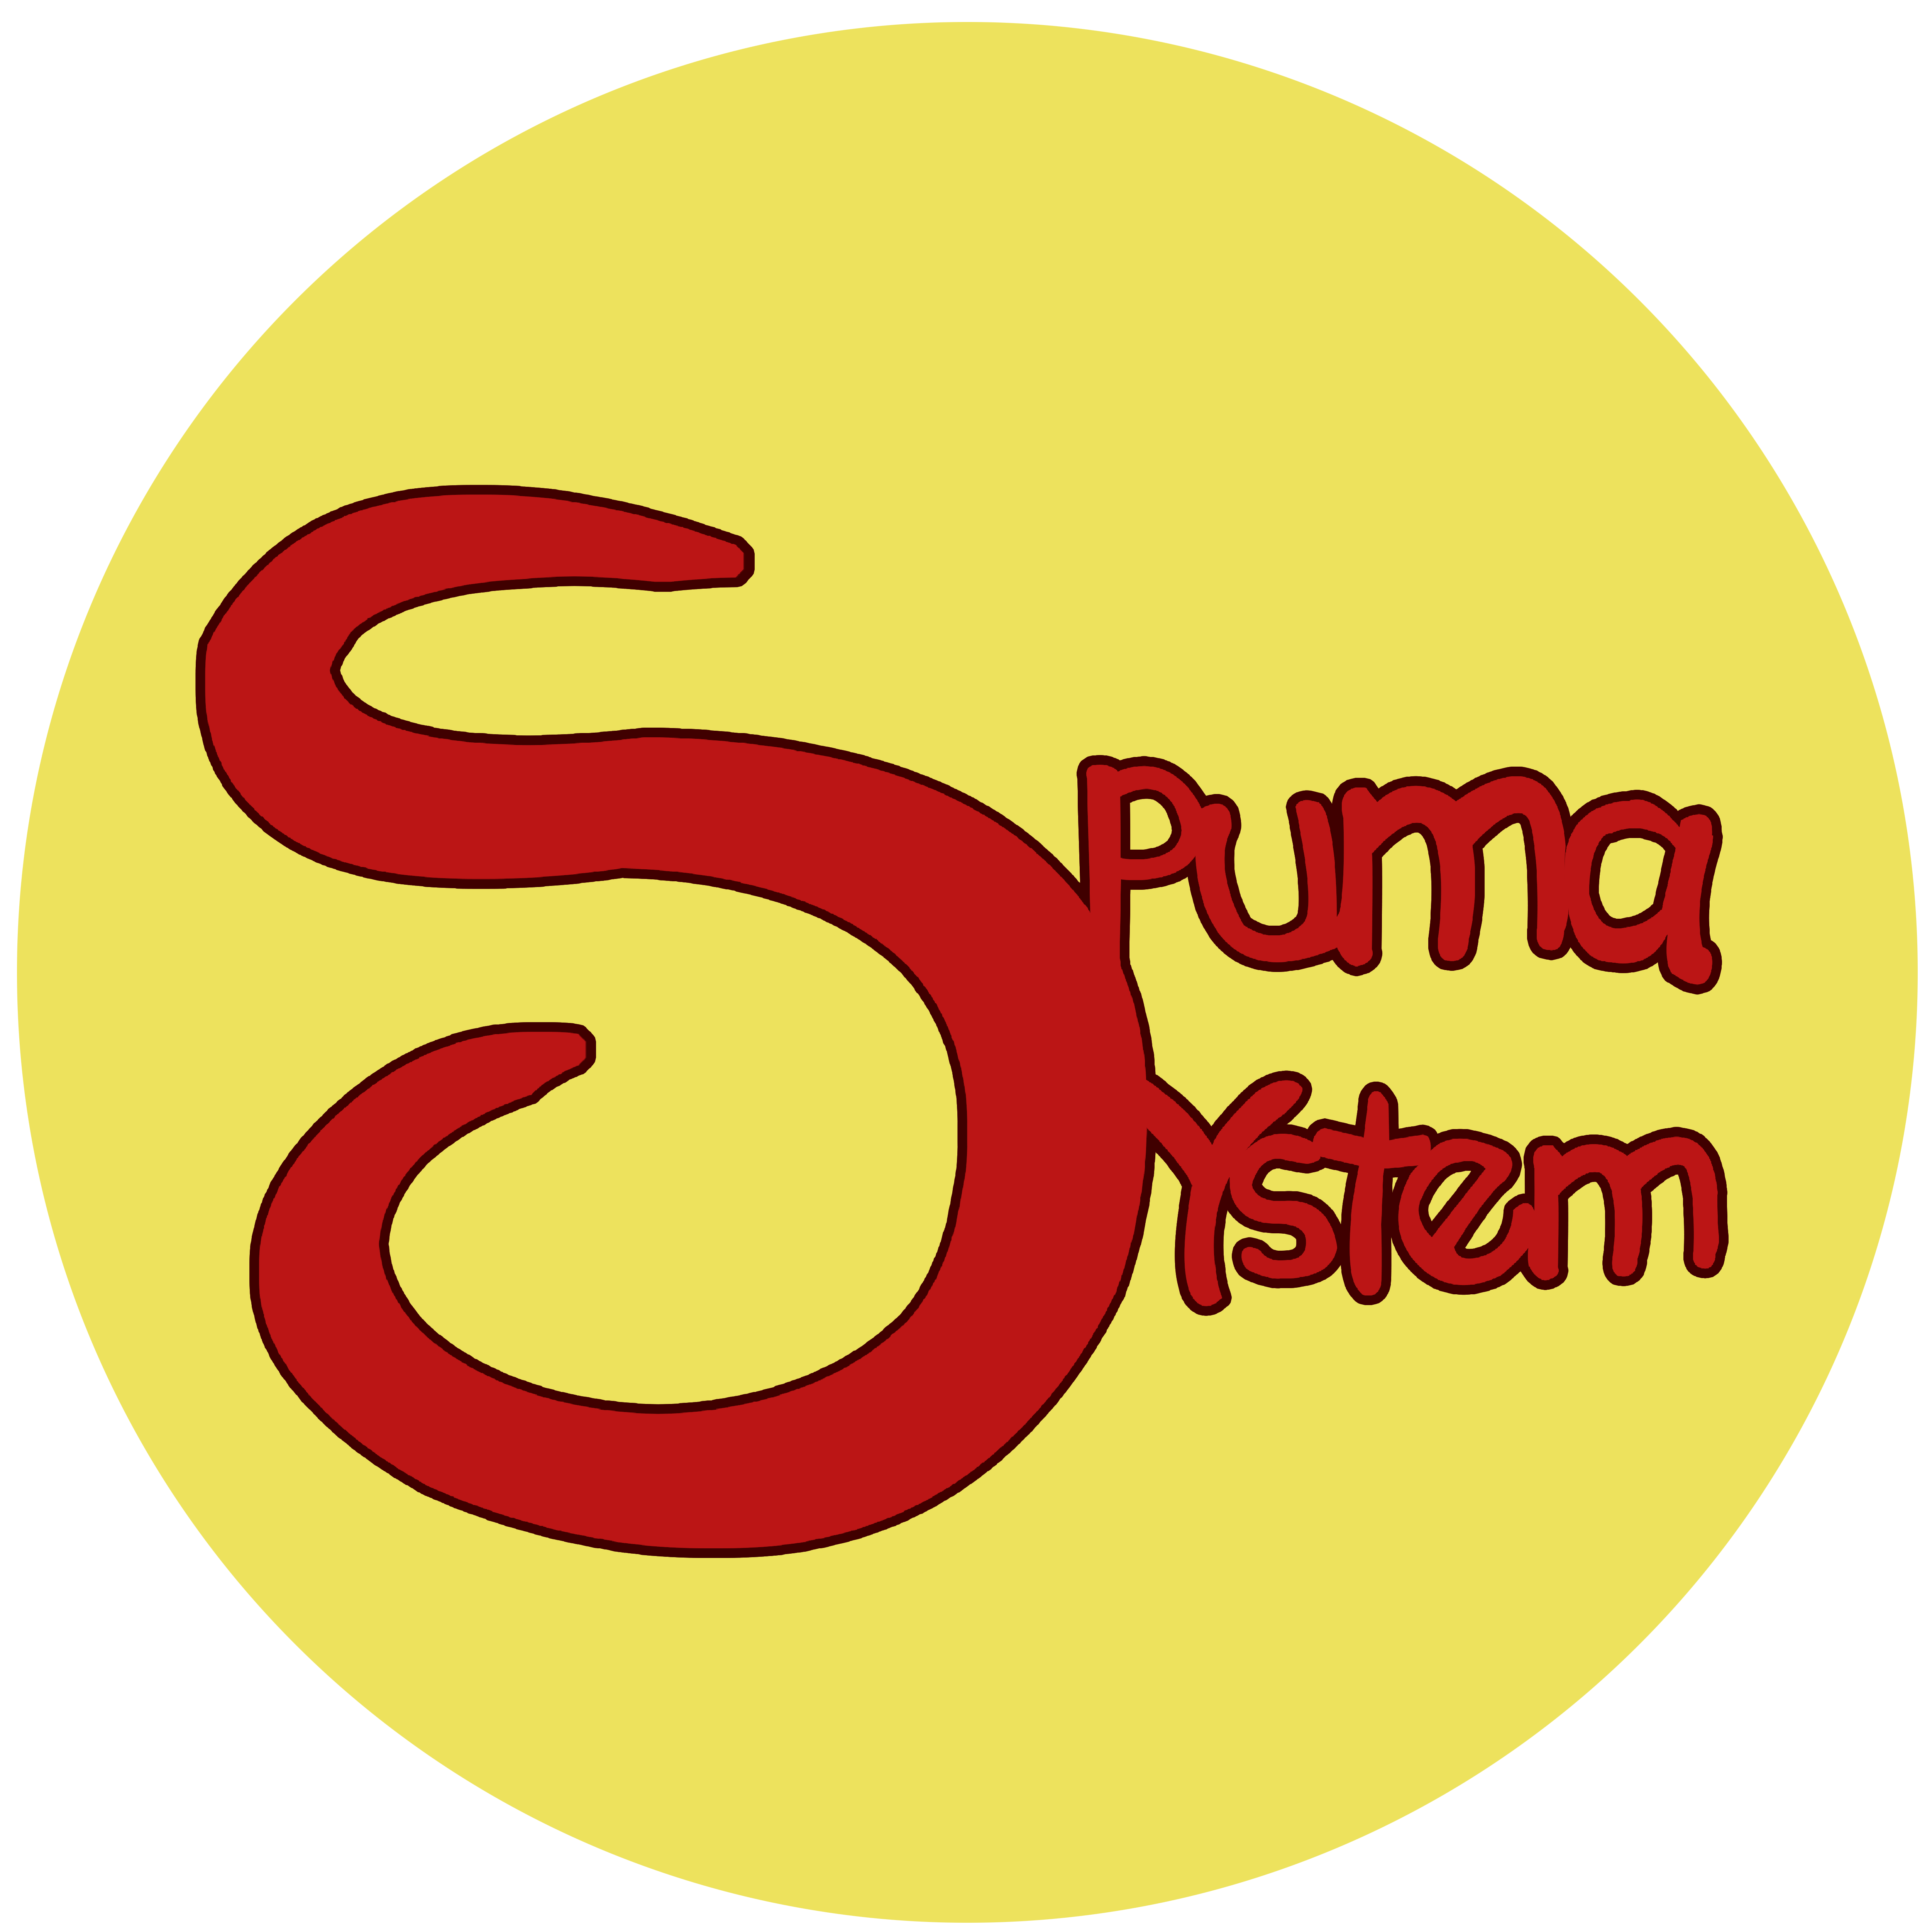 SpumaSystem Logo Espumasistem Espumasystem Espuma de Poliuretano Sevilla